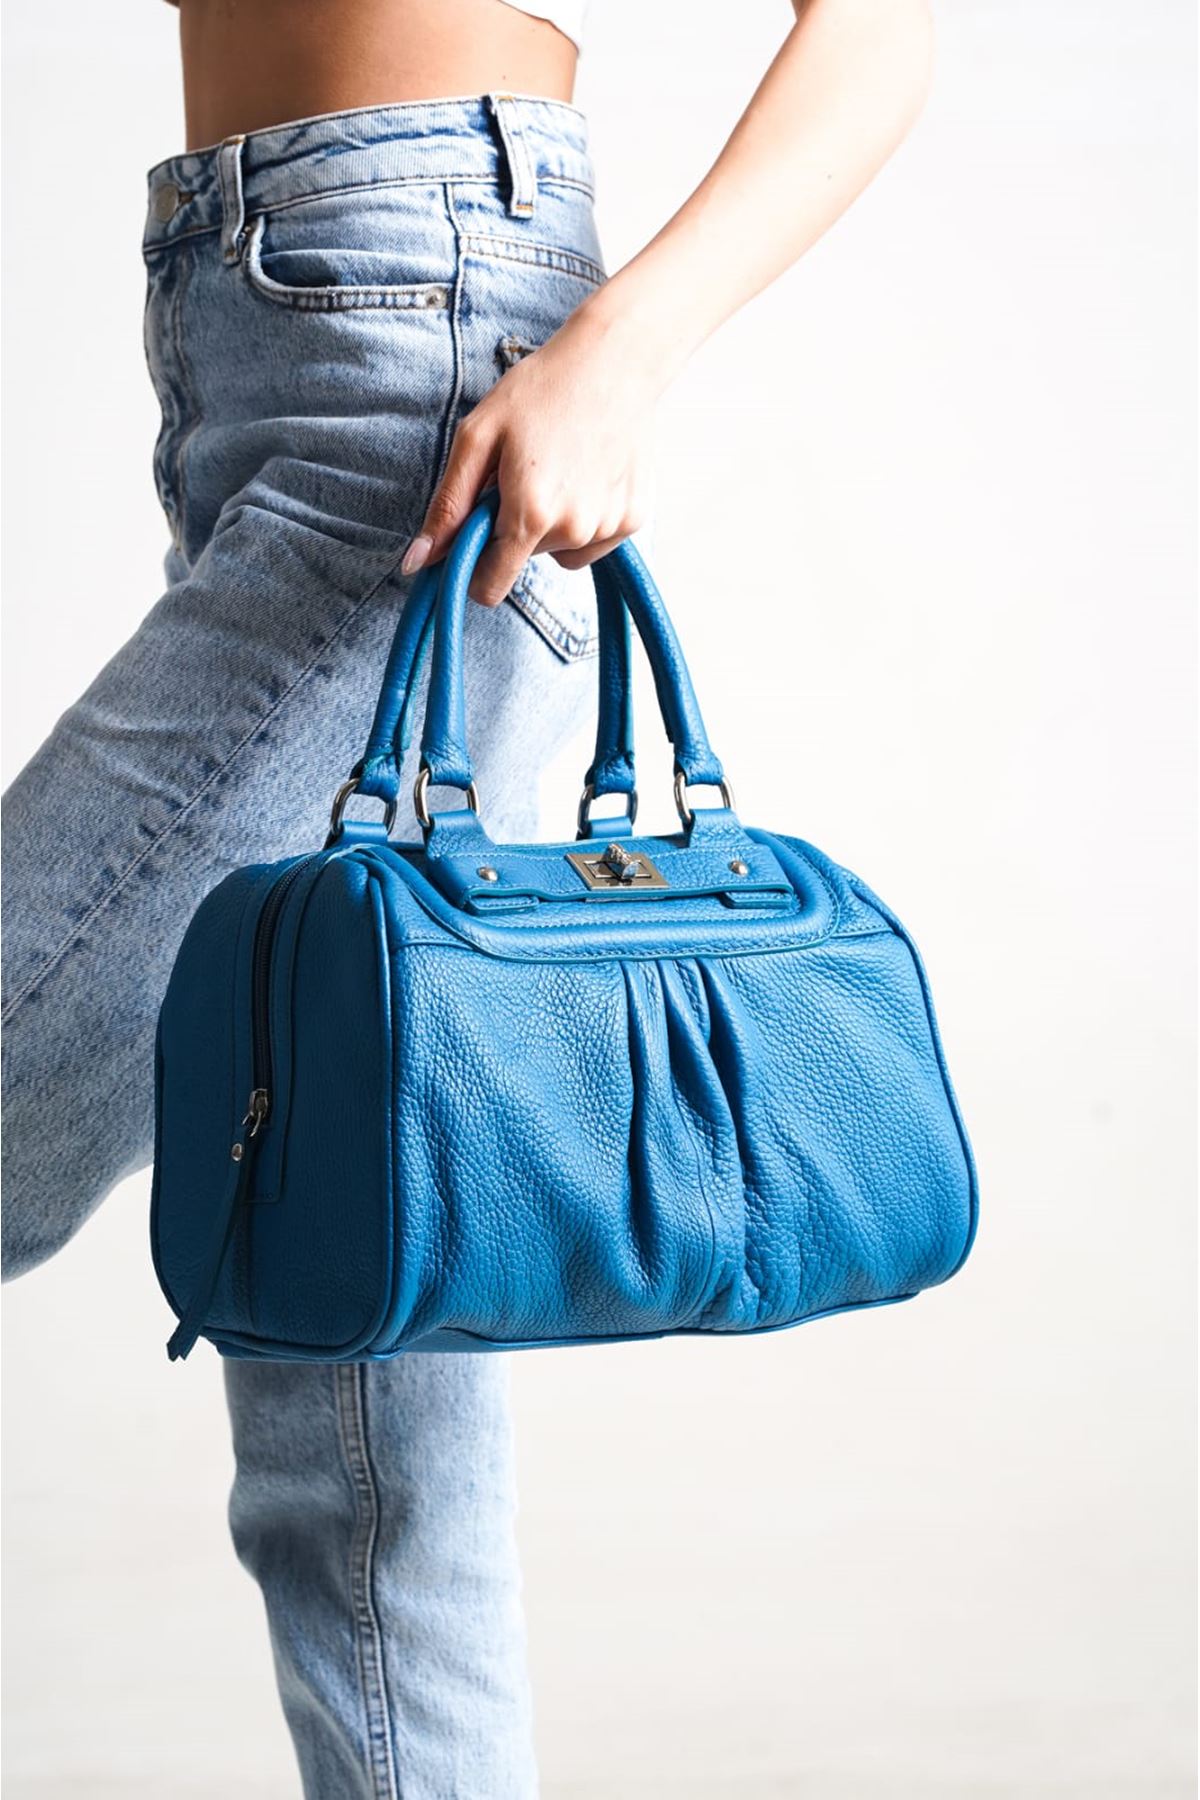 Kadın Hakiki Deri El Çanatsı Bavul Model-Petrol Mavi